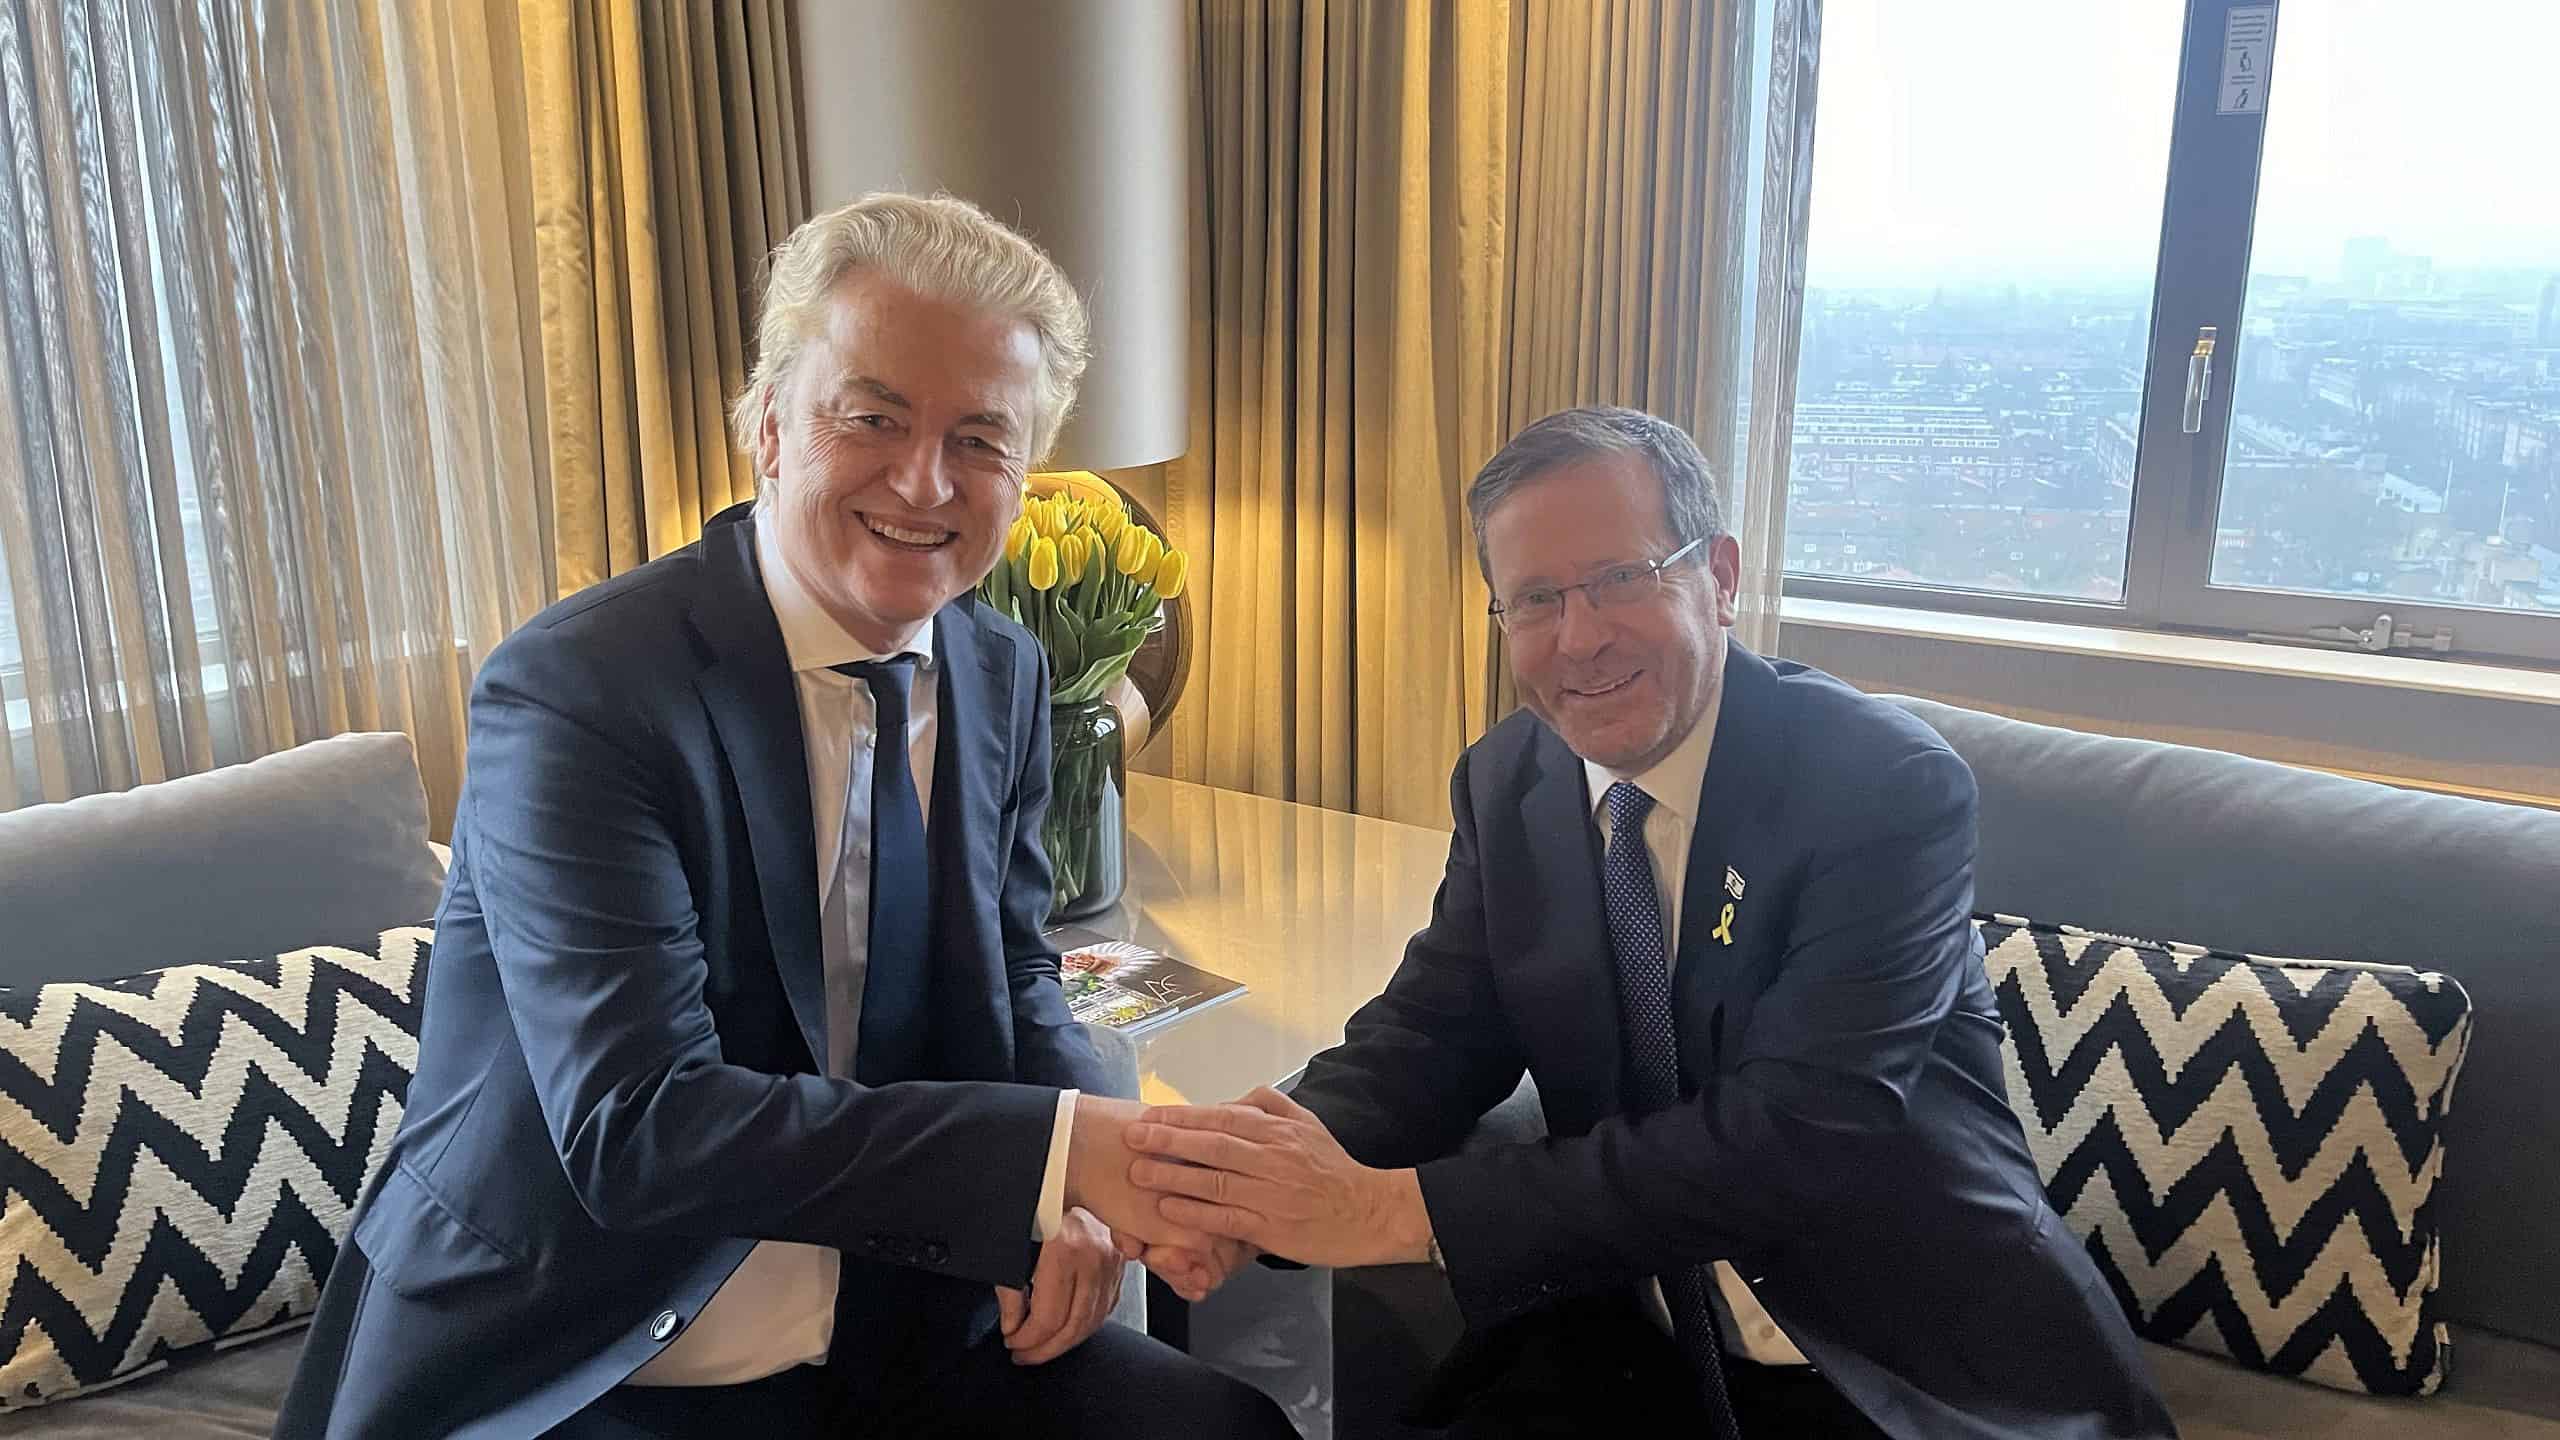 Dutch PM hopeful pledges ‘full support’ for Israel